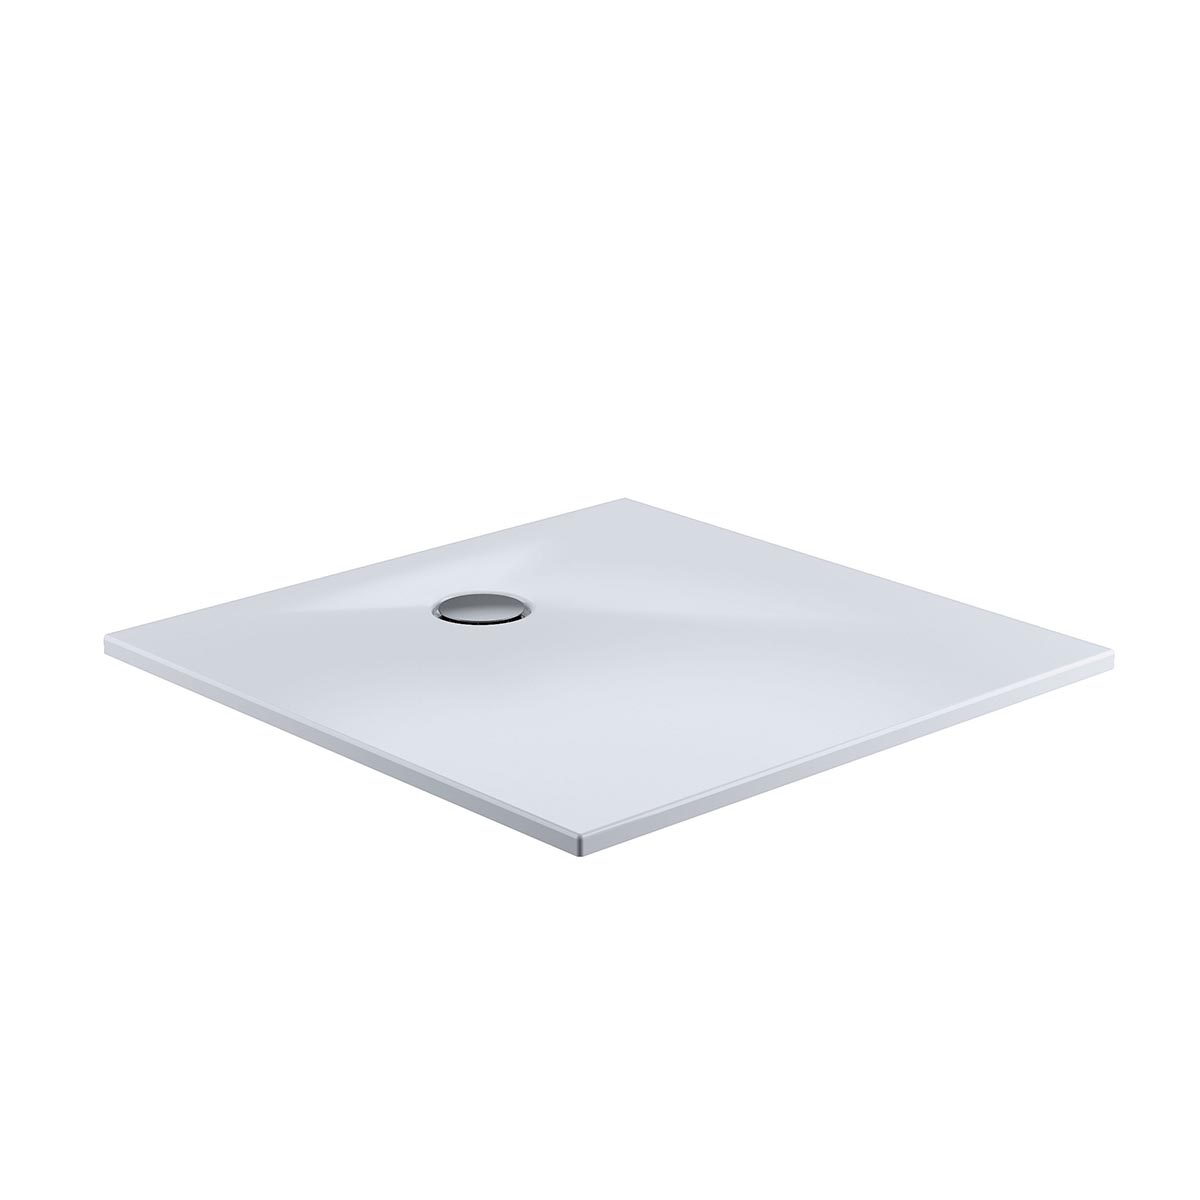 HSK Marmor-Polymer Quadrat Duschwanne plan-Weiß-90 x 90 cm-mit AntiSlip-Beschichtung-ohne Aquaproof-Dichtset